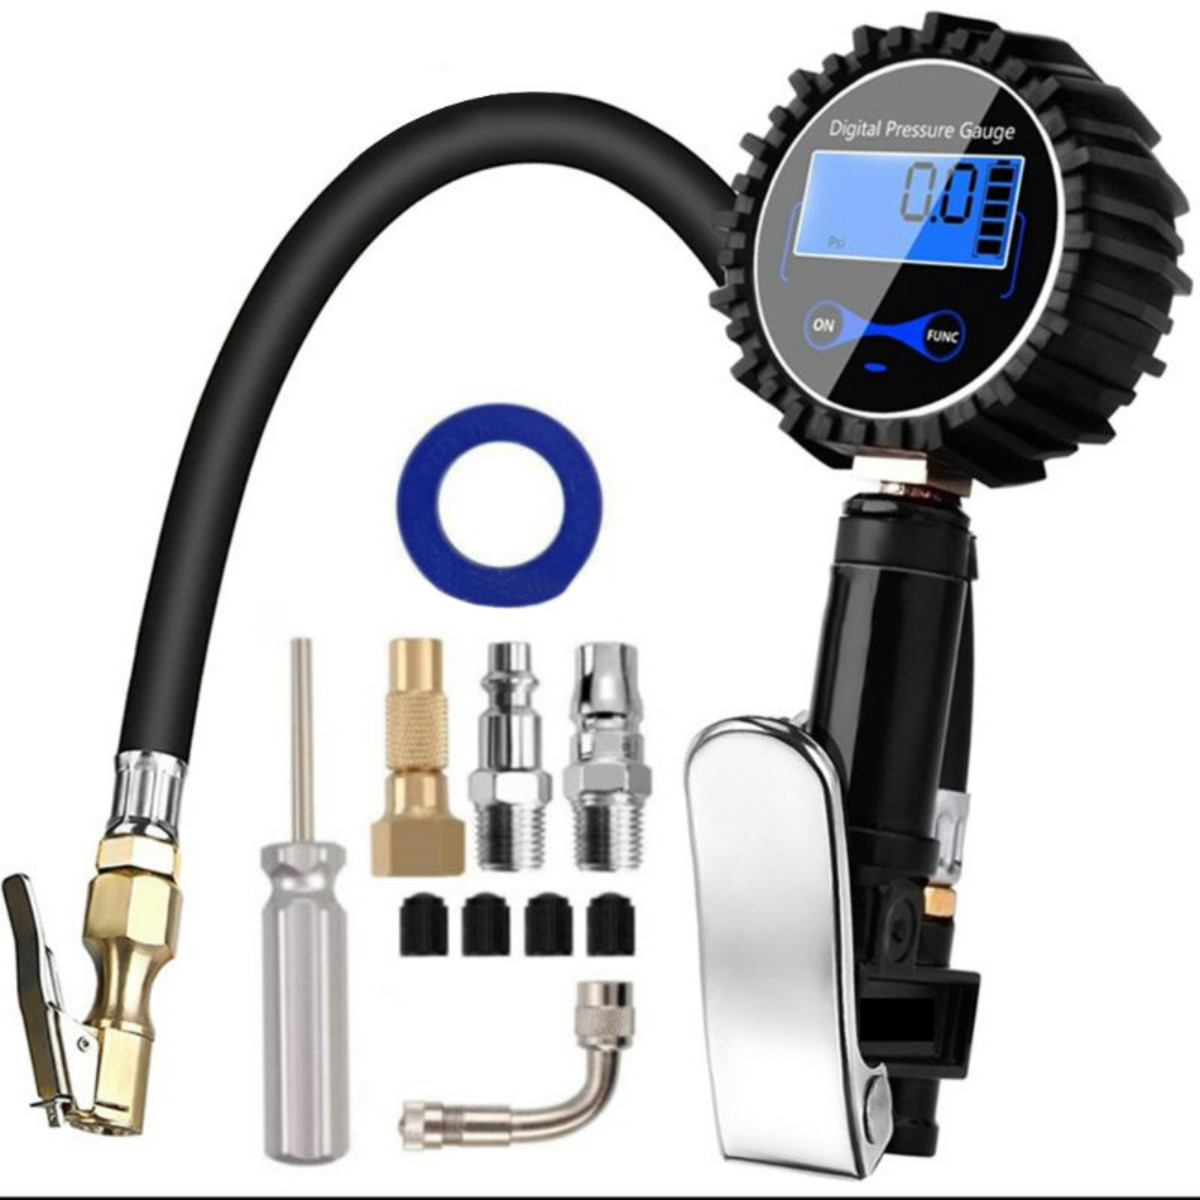 Details about   Digital Tire Pressure Gauge Meter Tester 150 PSI Car Bike Motorcycle RV 